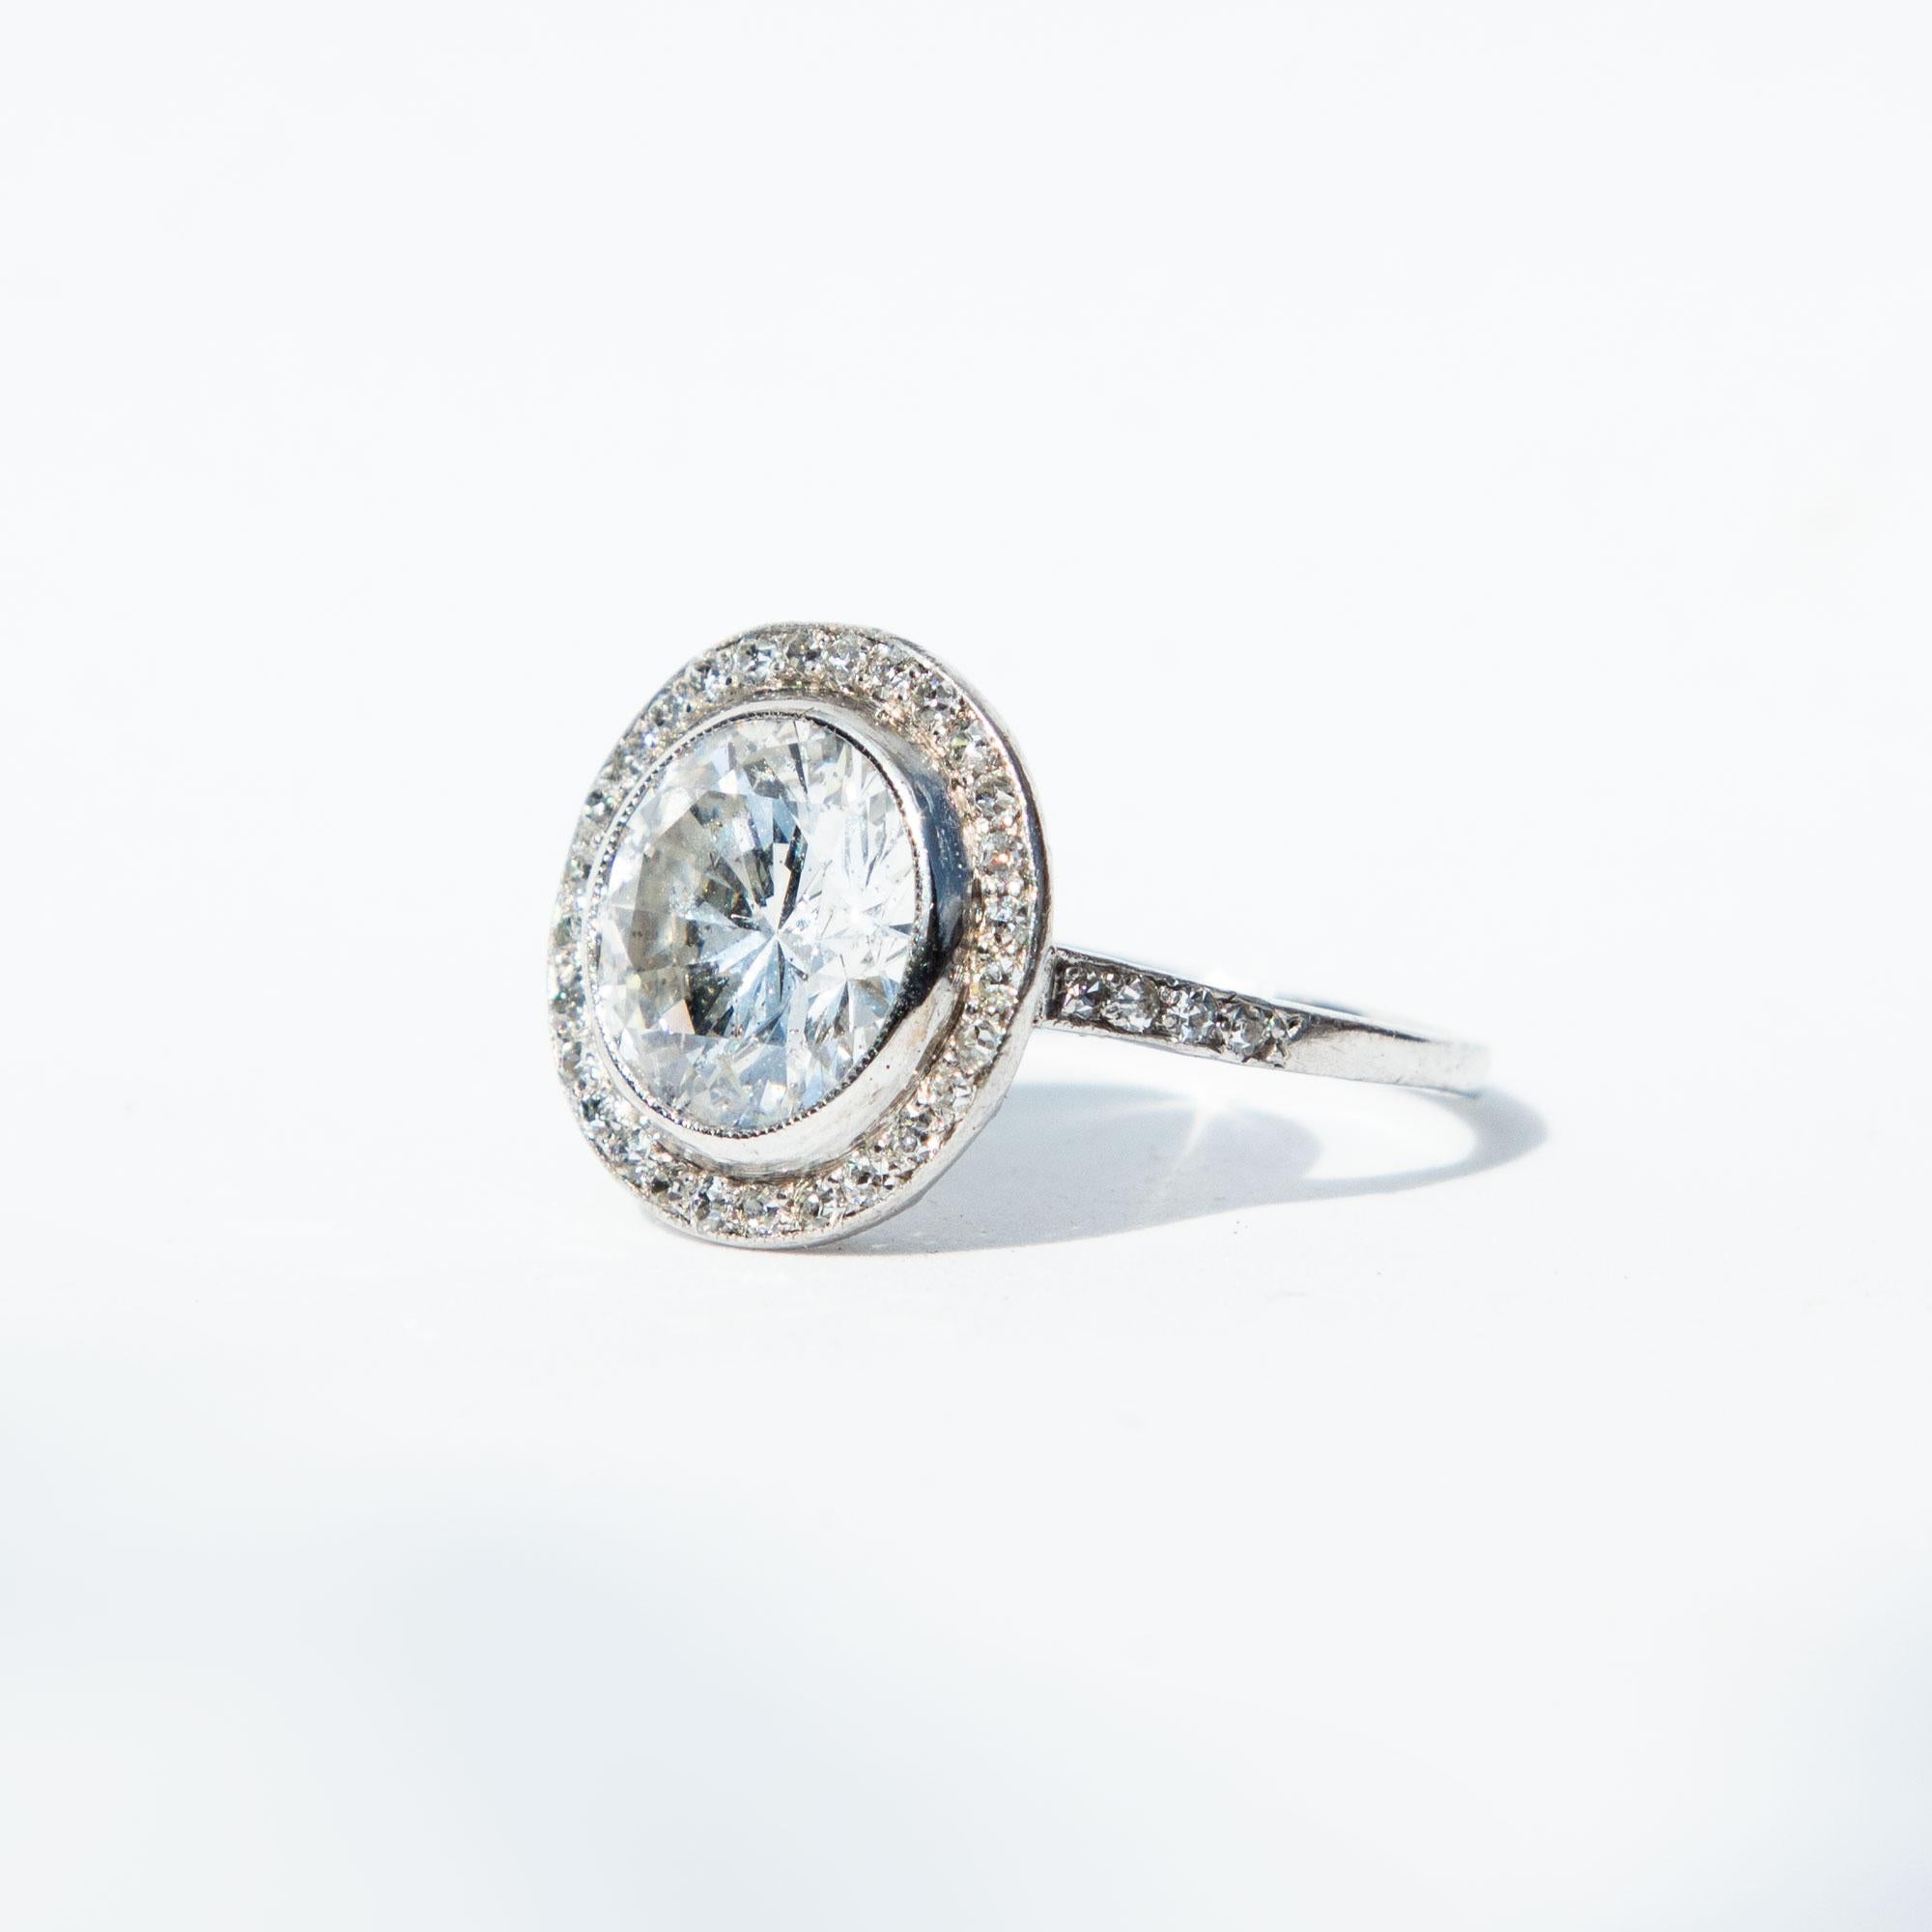 Der atemberaubende zentrale Diamant ist ein moderner Brillantschliff. Dieser ist von einem Halo aus funkelnden Diamanten umgeben, wobei die Diamanten bis zu den Schultern reichen. Zertifiziertes Gesamtgewicht der Diamanten 3,62 Karat, Farbe F und